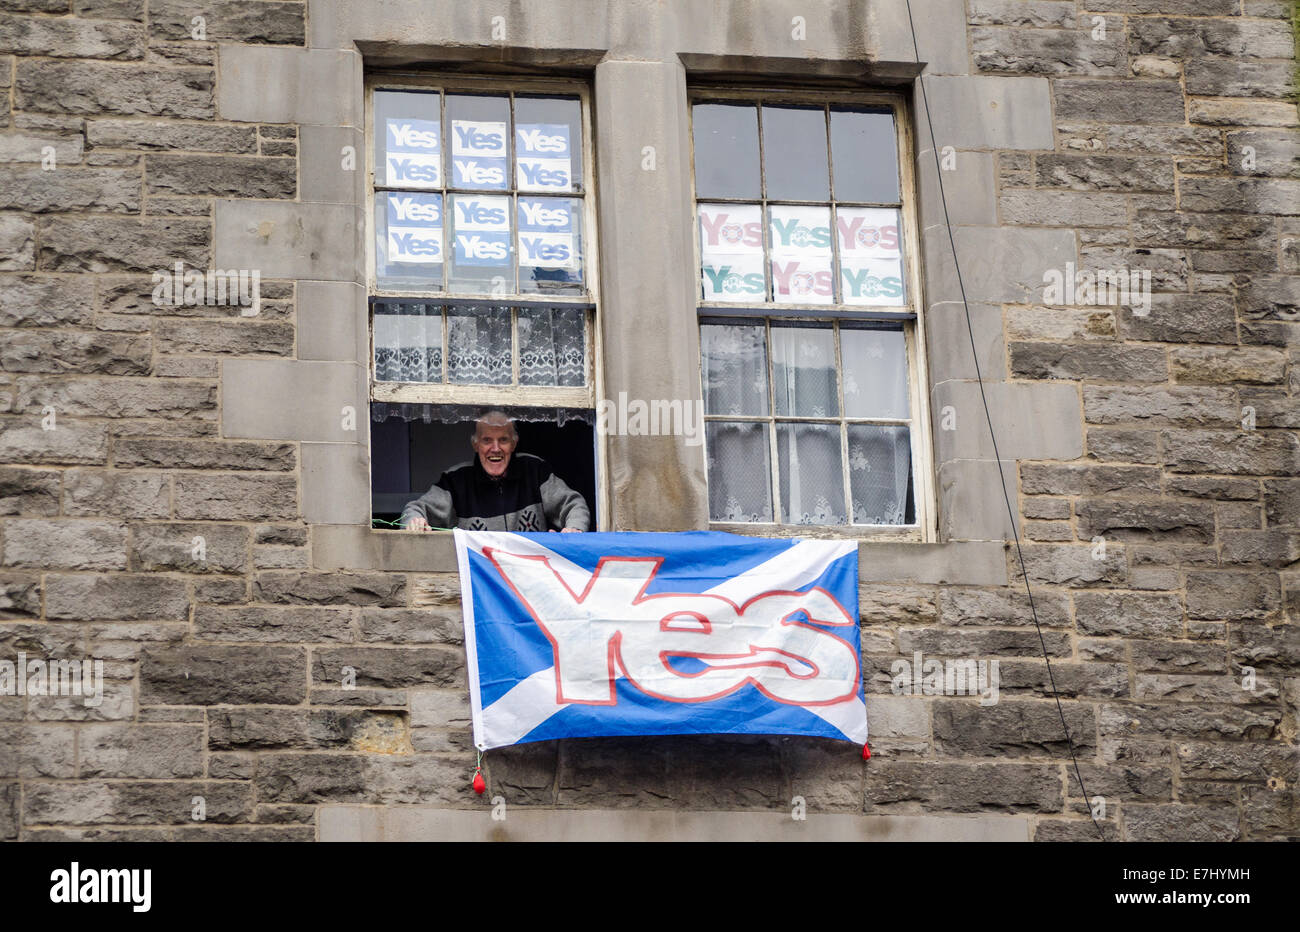 Édimbourg, Écosse, 11 septembre 2014 : Un homme âgé smiling à partir de la fenêtre de son appartement avec Édimbourg Oui des affiches. Banque D'Images